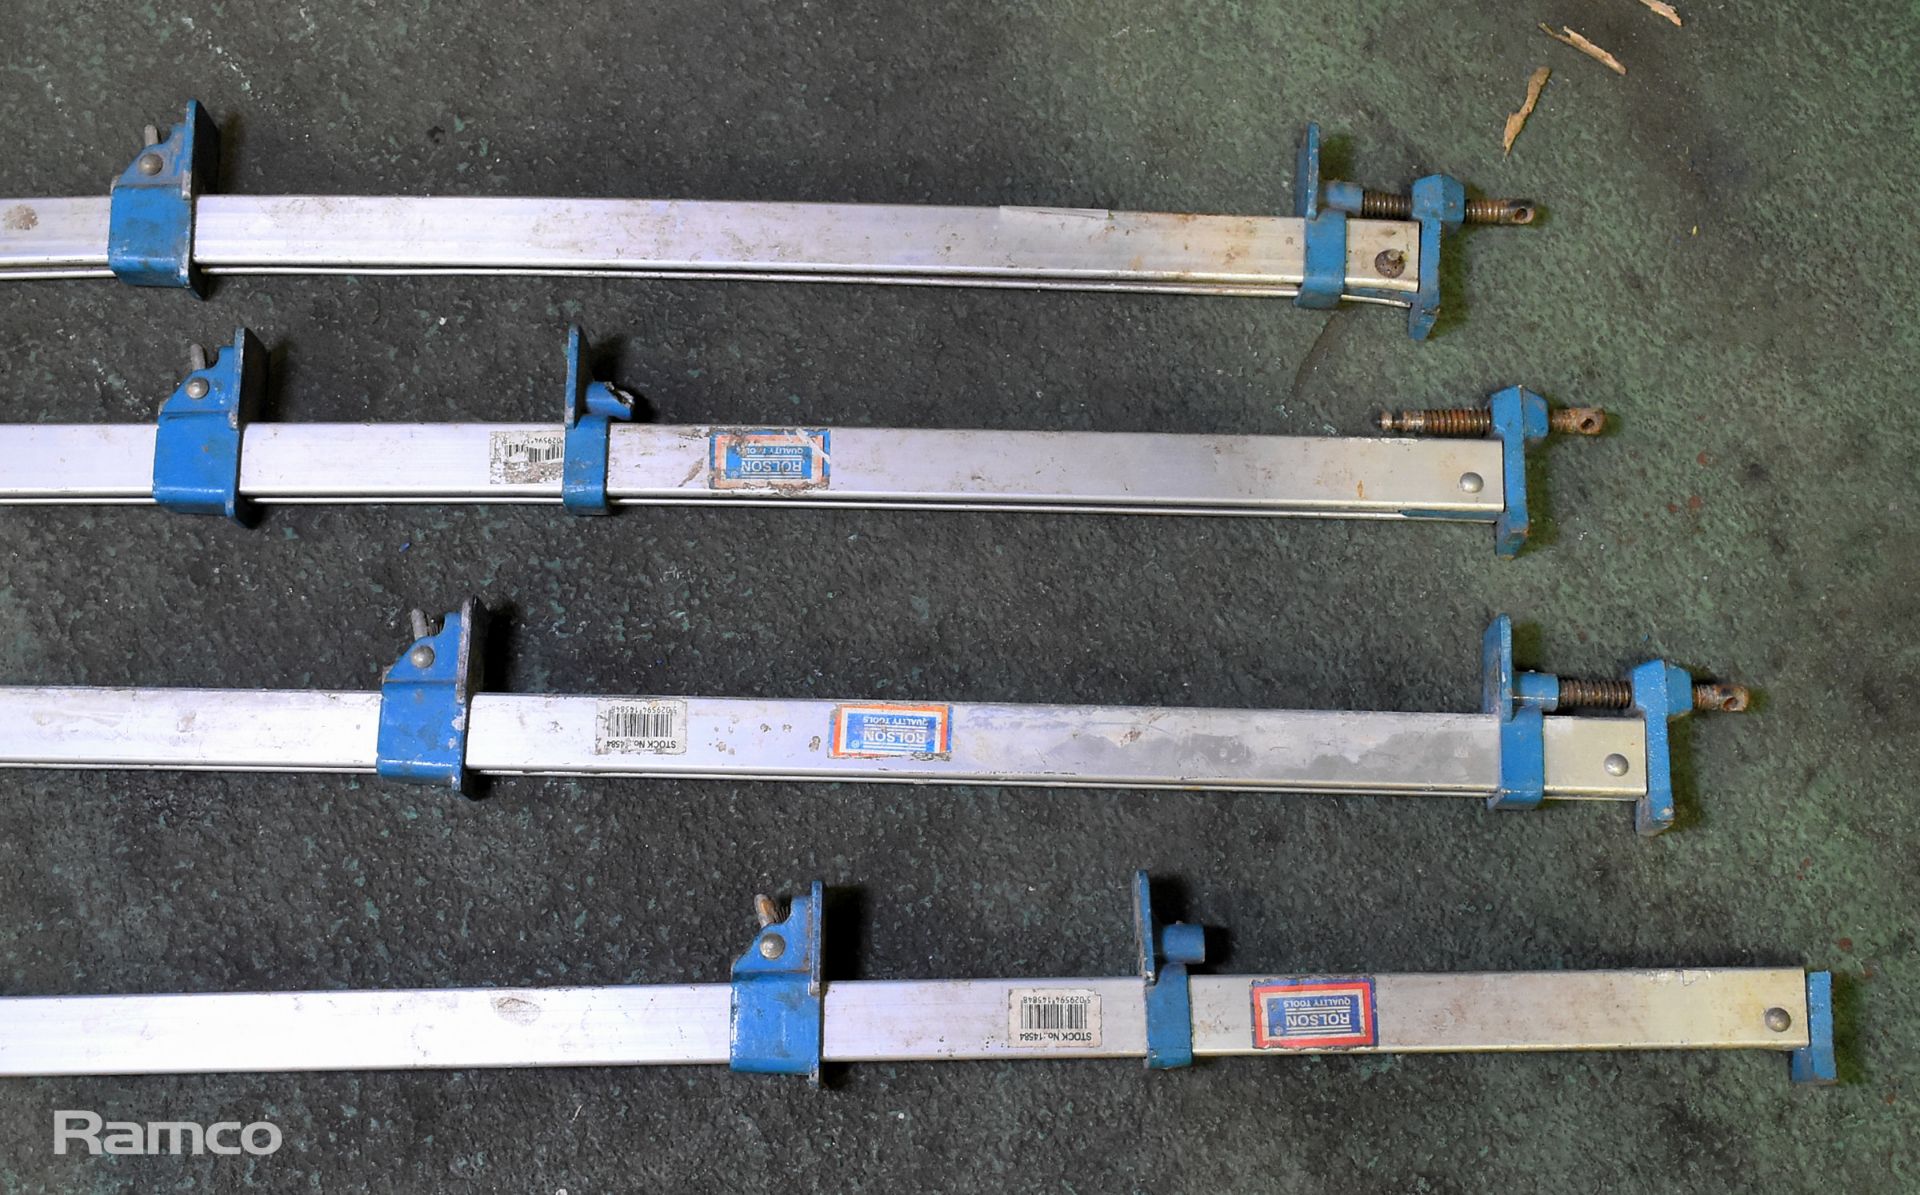 4x Aluminium sash clamps - L 1200mm - Image 2 of 5